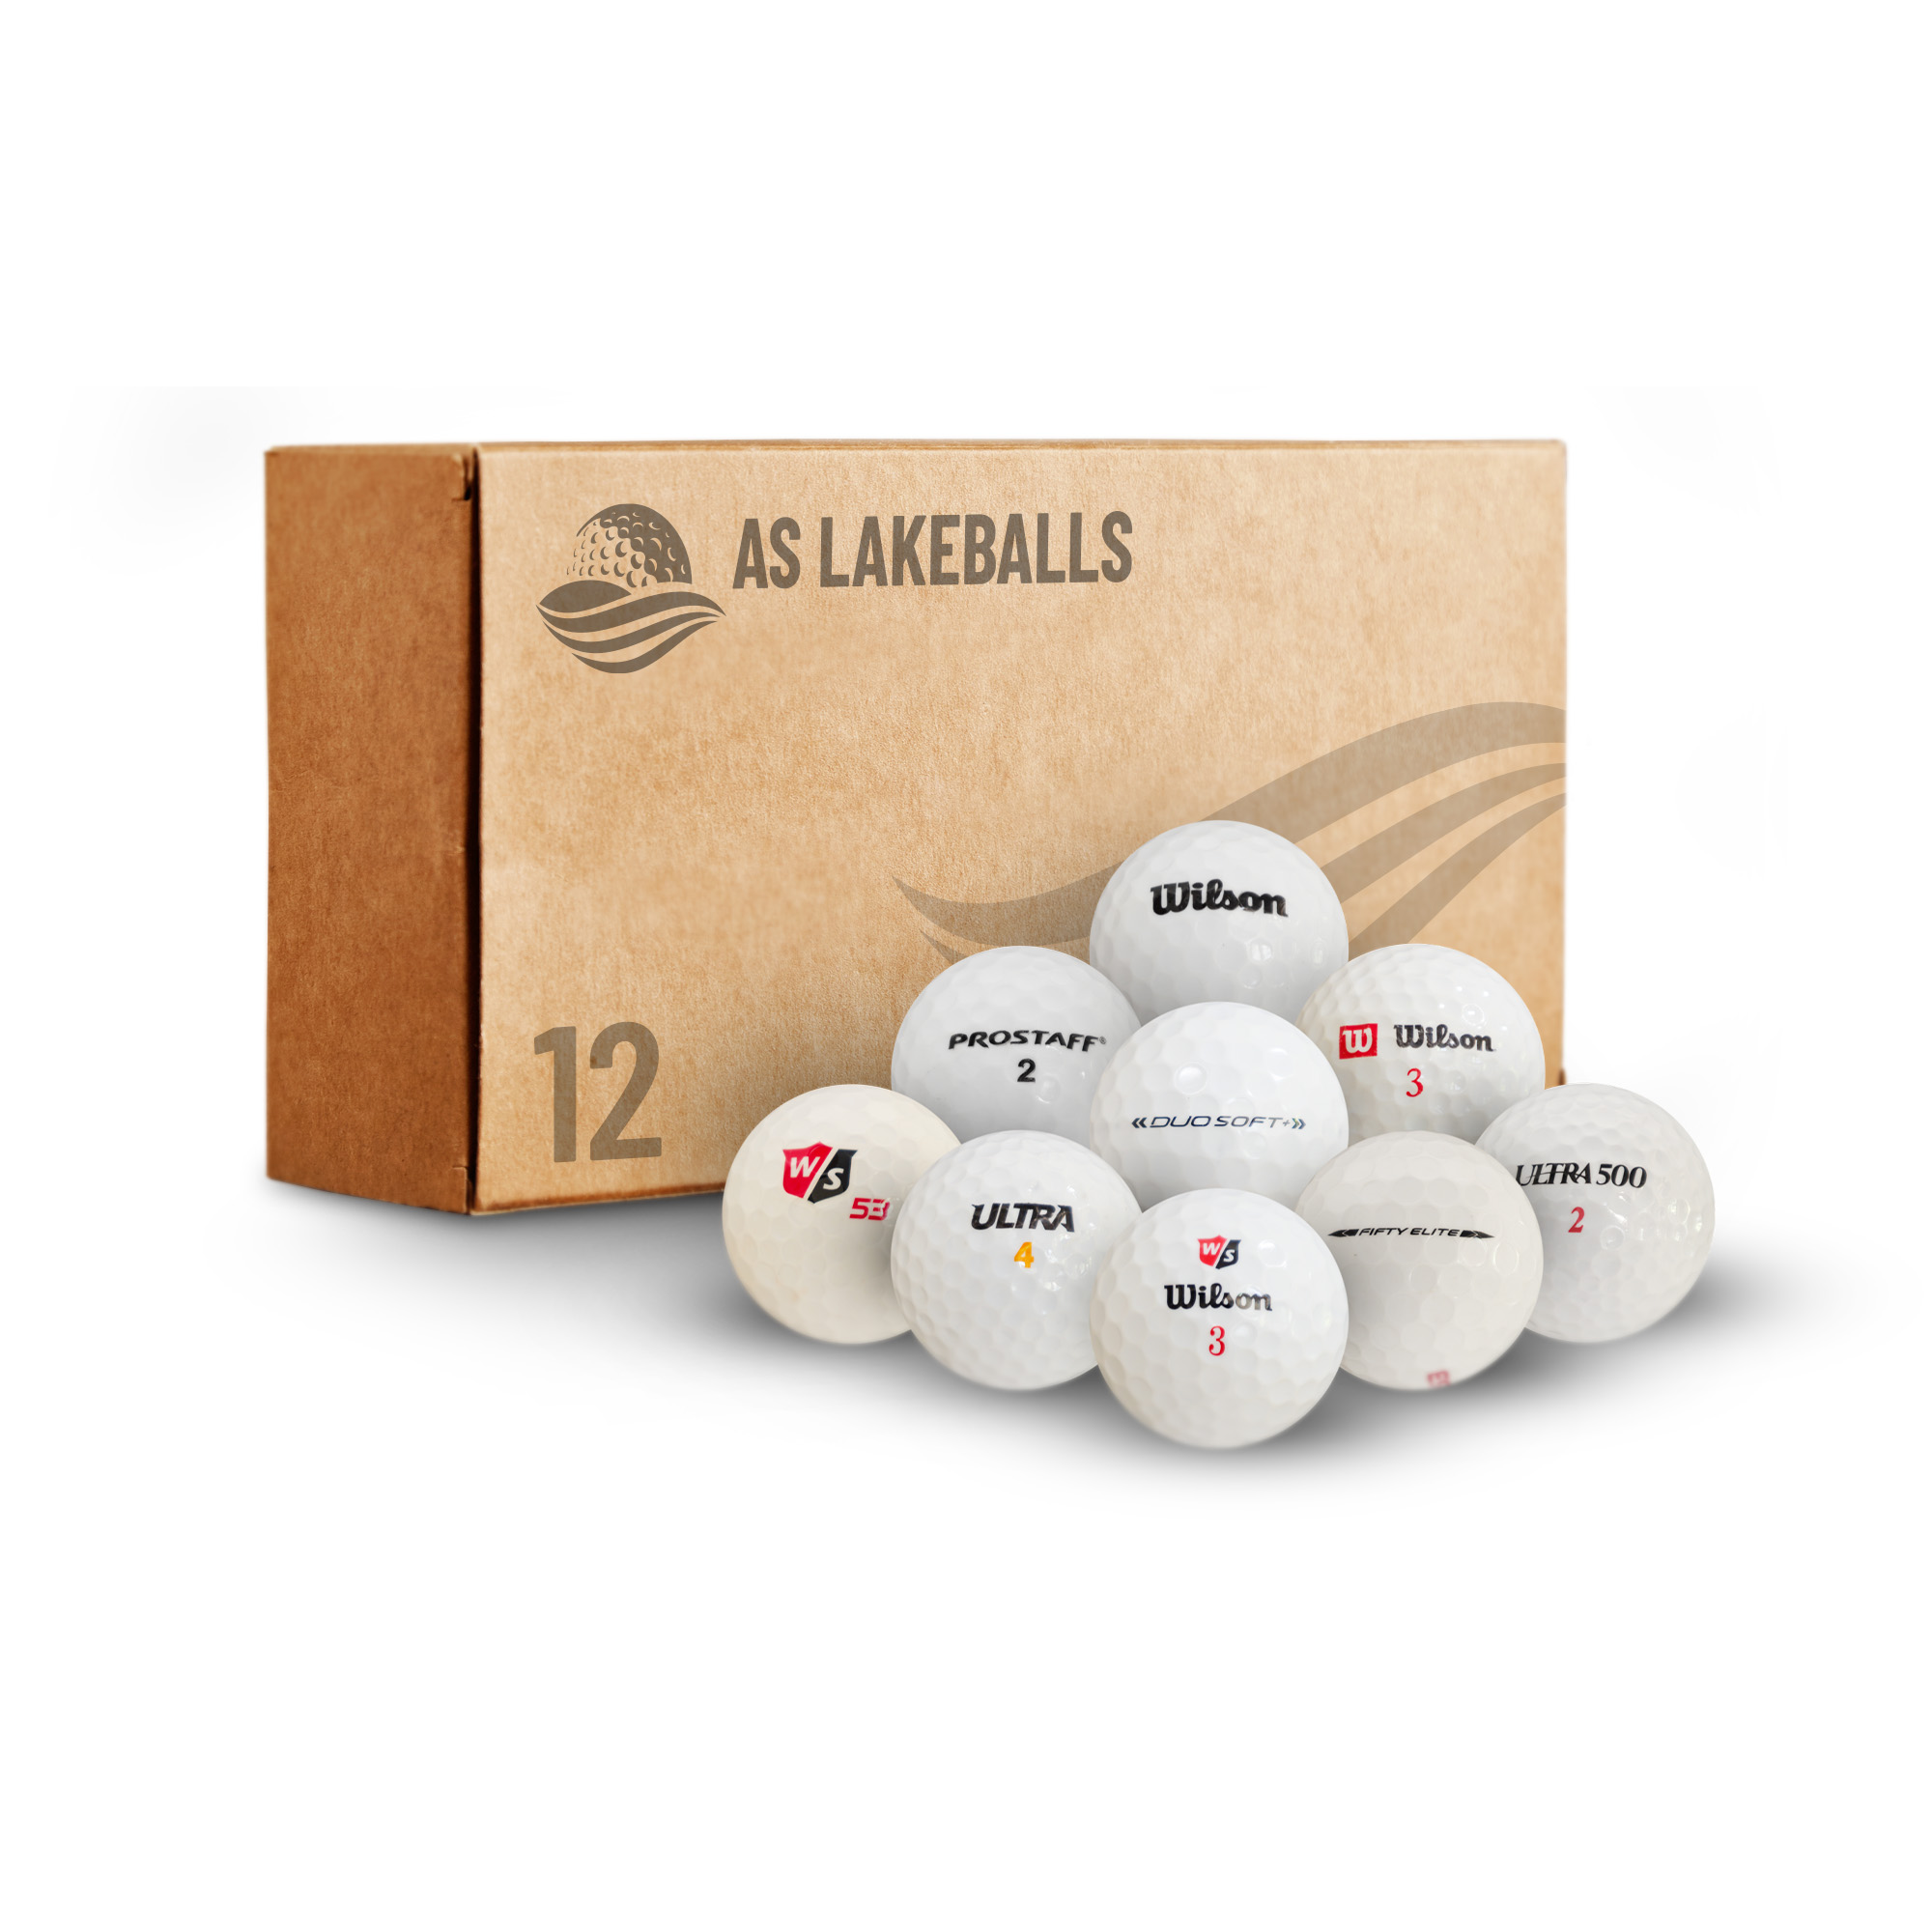 12 Stück Wilson Mix AA-AAA Lakeballs bei AS Lakeballs günstig kaufen